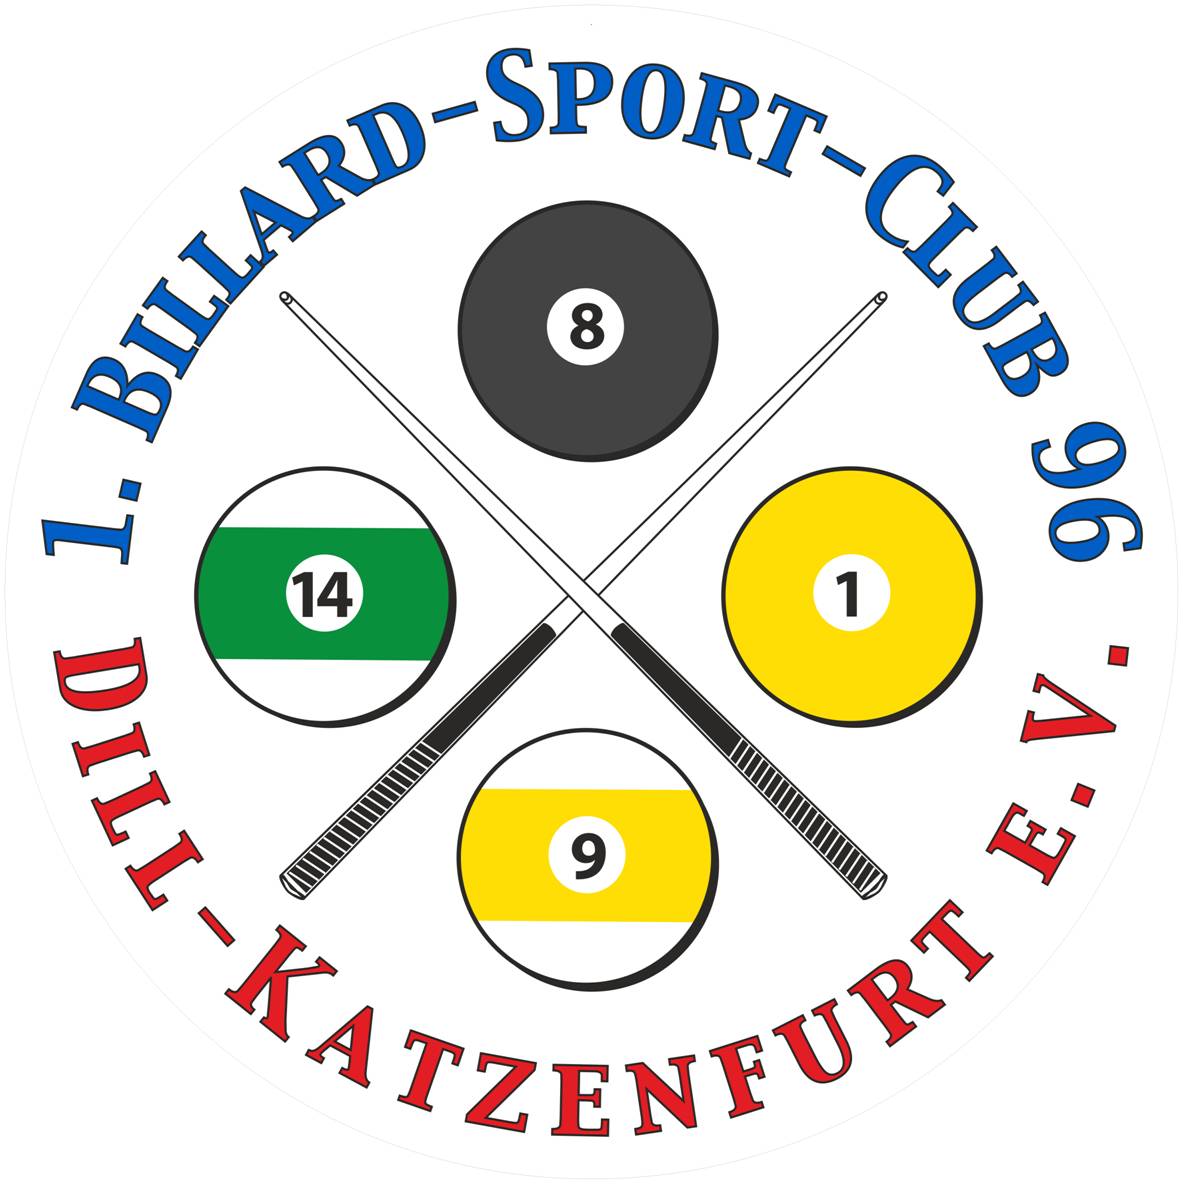 BSC Dill Katzenfurt 96 e.V.